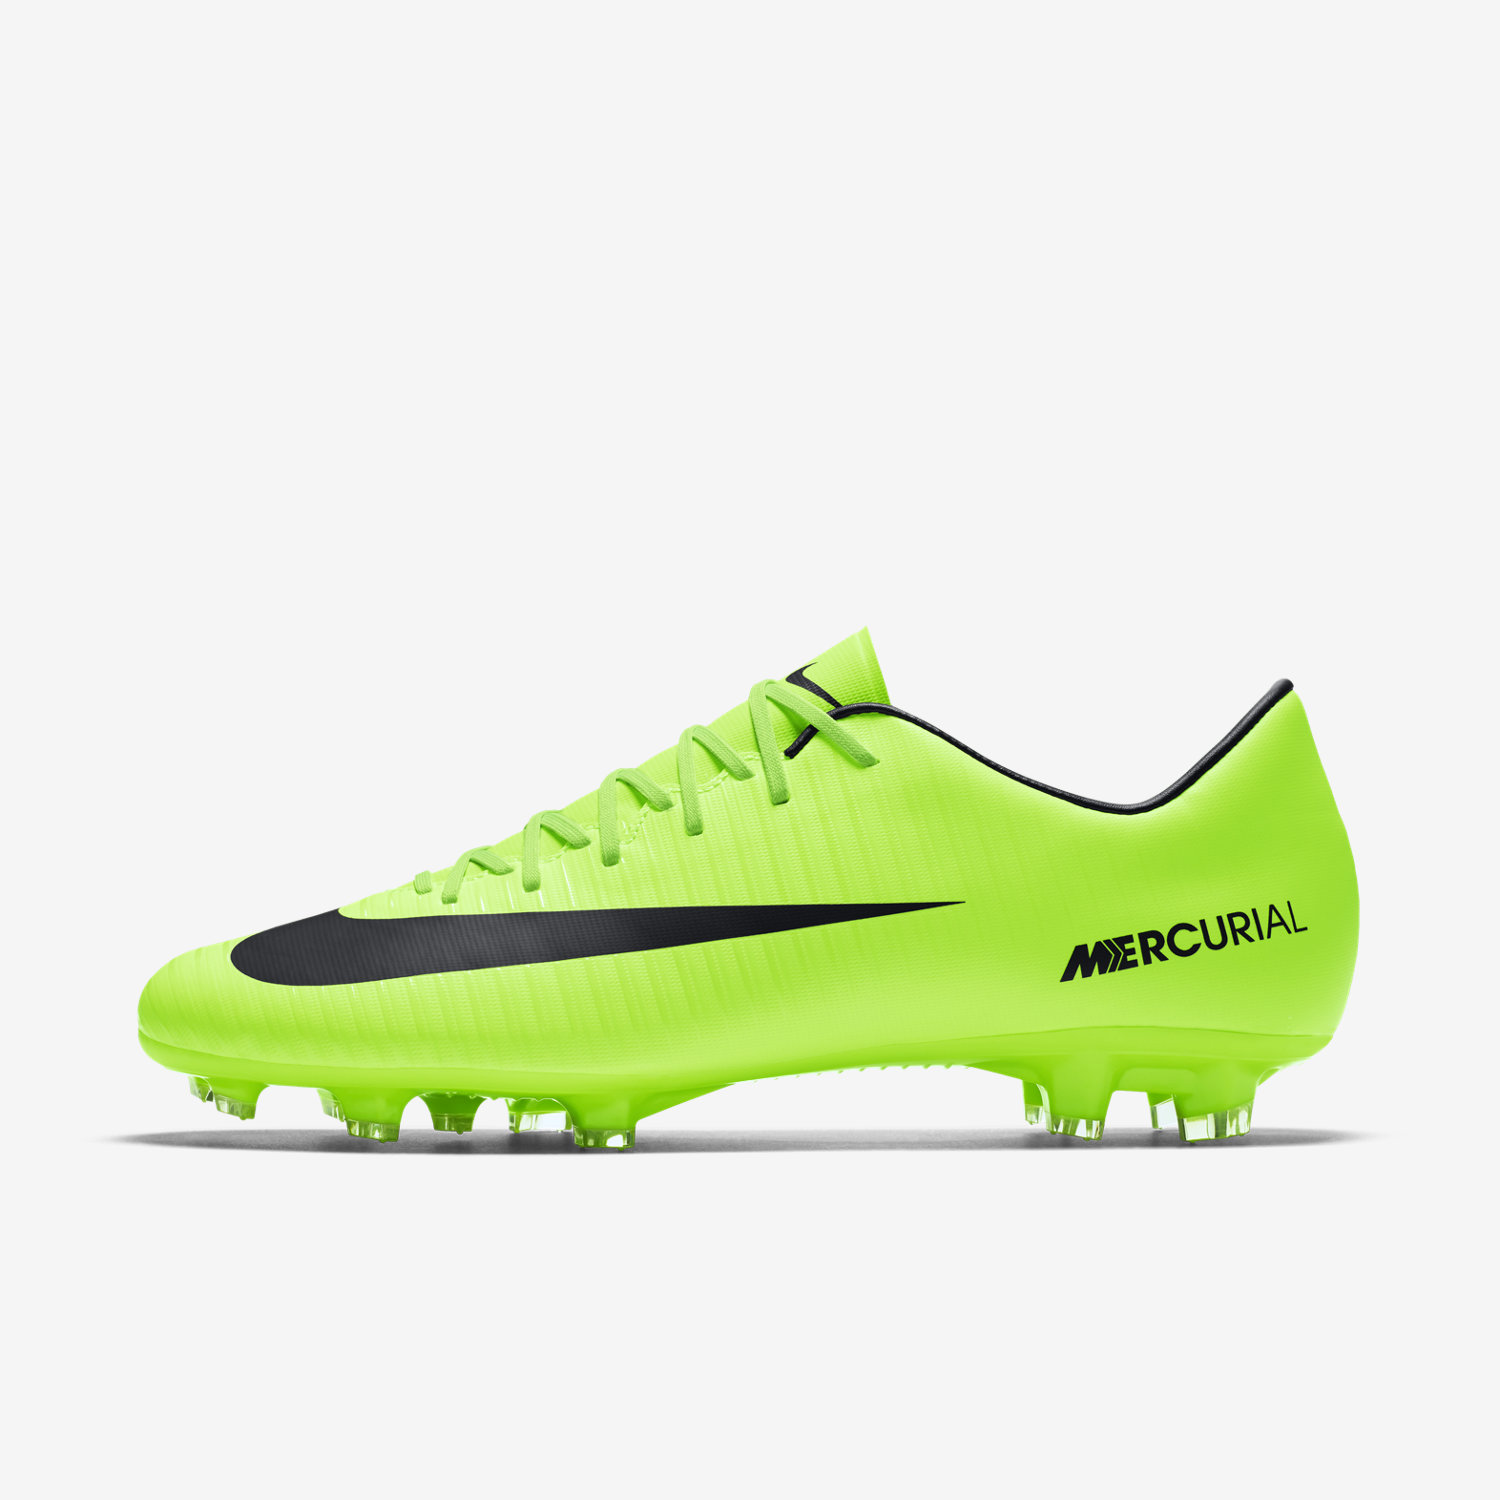 ποδοσφαιρικα παπουτσια ανδρικα Nike Mercurial Victory VI FG πρασινο/γκρι/ασπρα/μαυρα 49995727XI